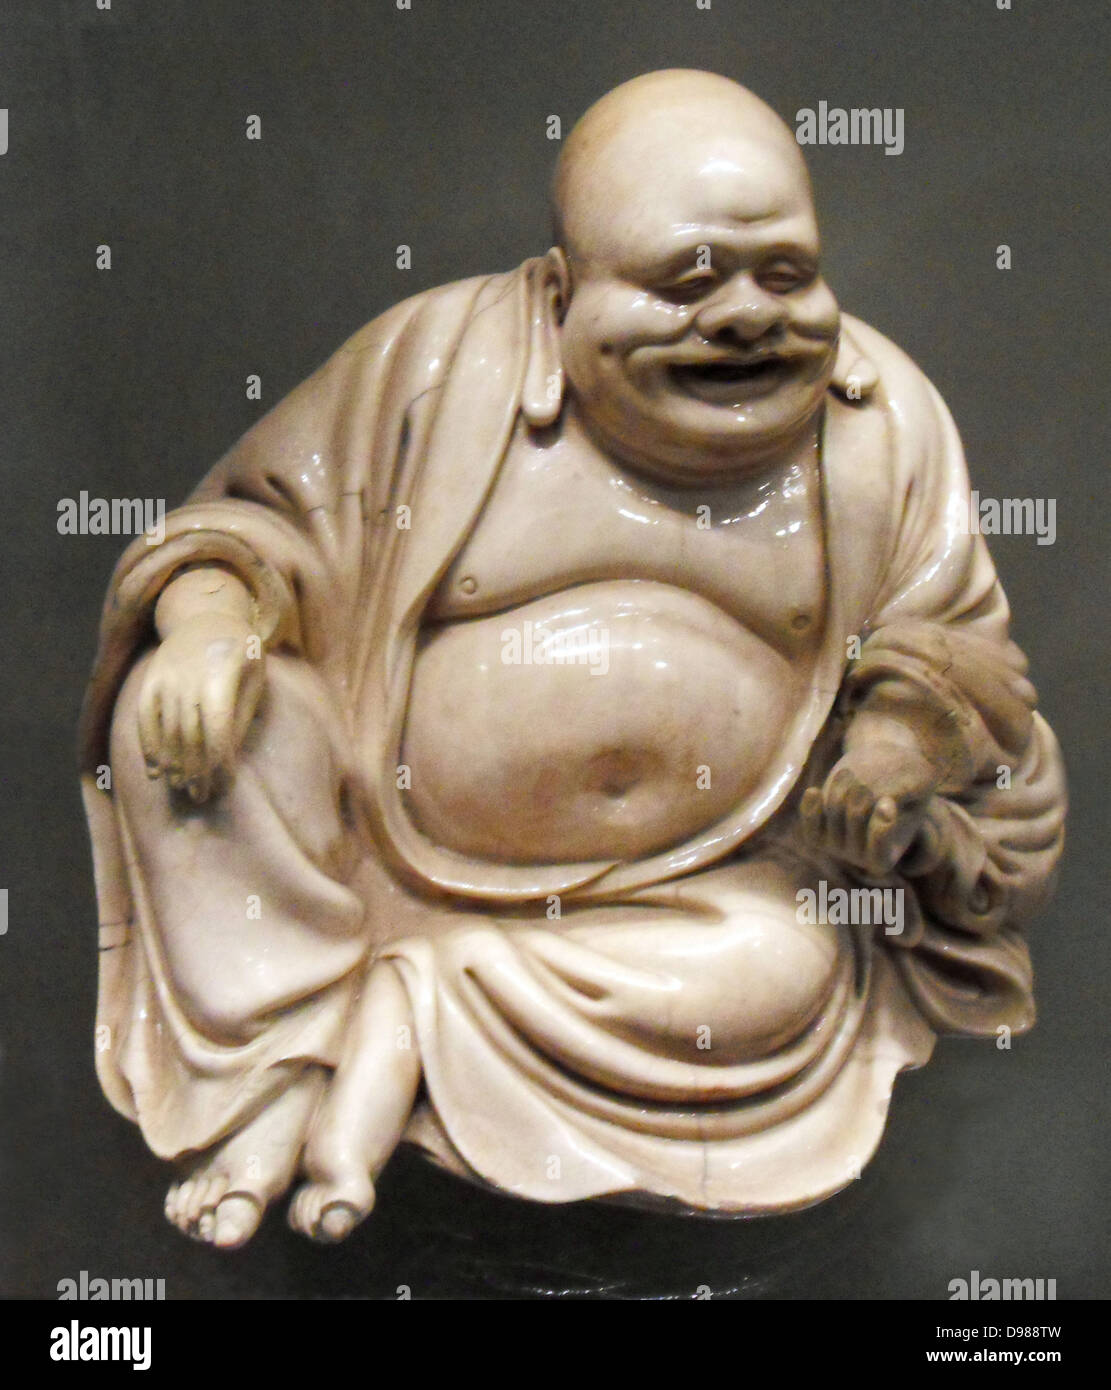 La figure de faïence Hotei, années 1800, le japonais. Budai, prononcé Hotei en japonais, est une divinité du folklore chinois. Son nom signifie "sac en tissu, et vient de le sac qu'il porte. Il est presque toujours montré sourire ou rire, d'où son surnom en chinois, le Laughing Buddha. Banque D'Images